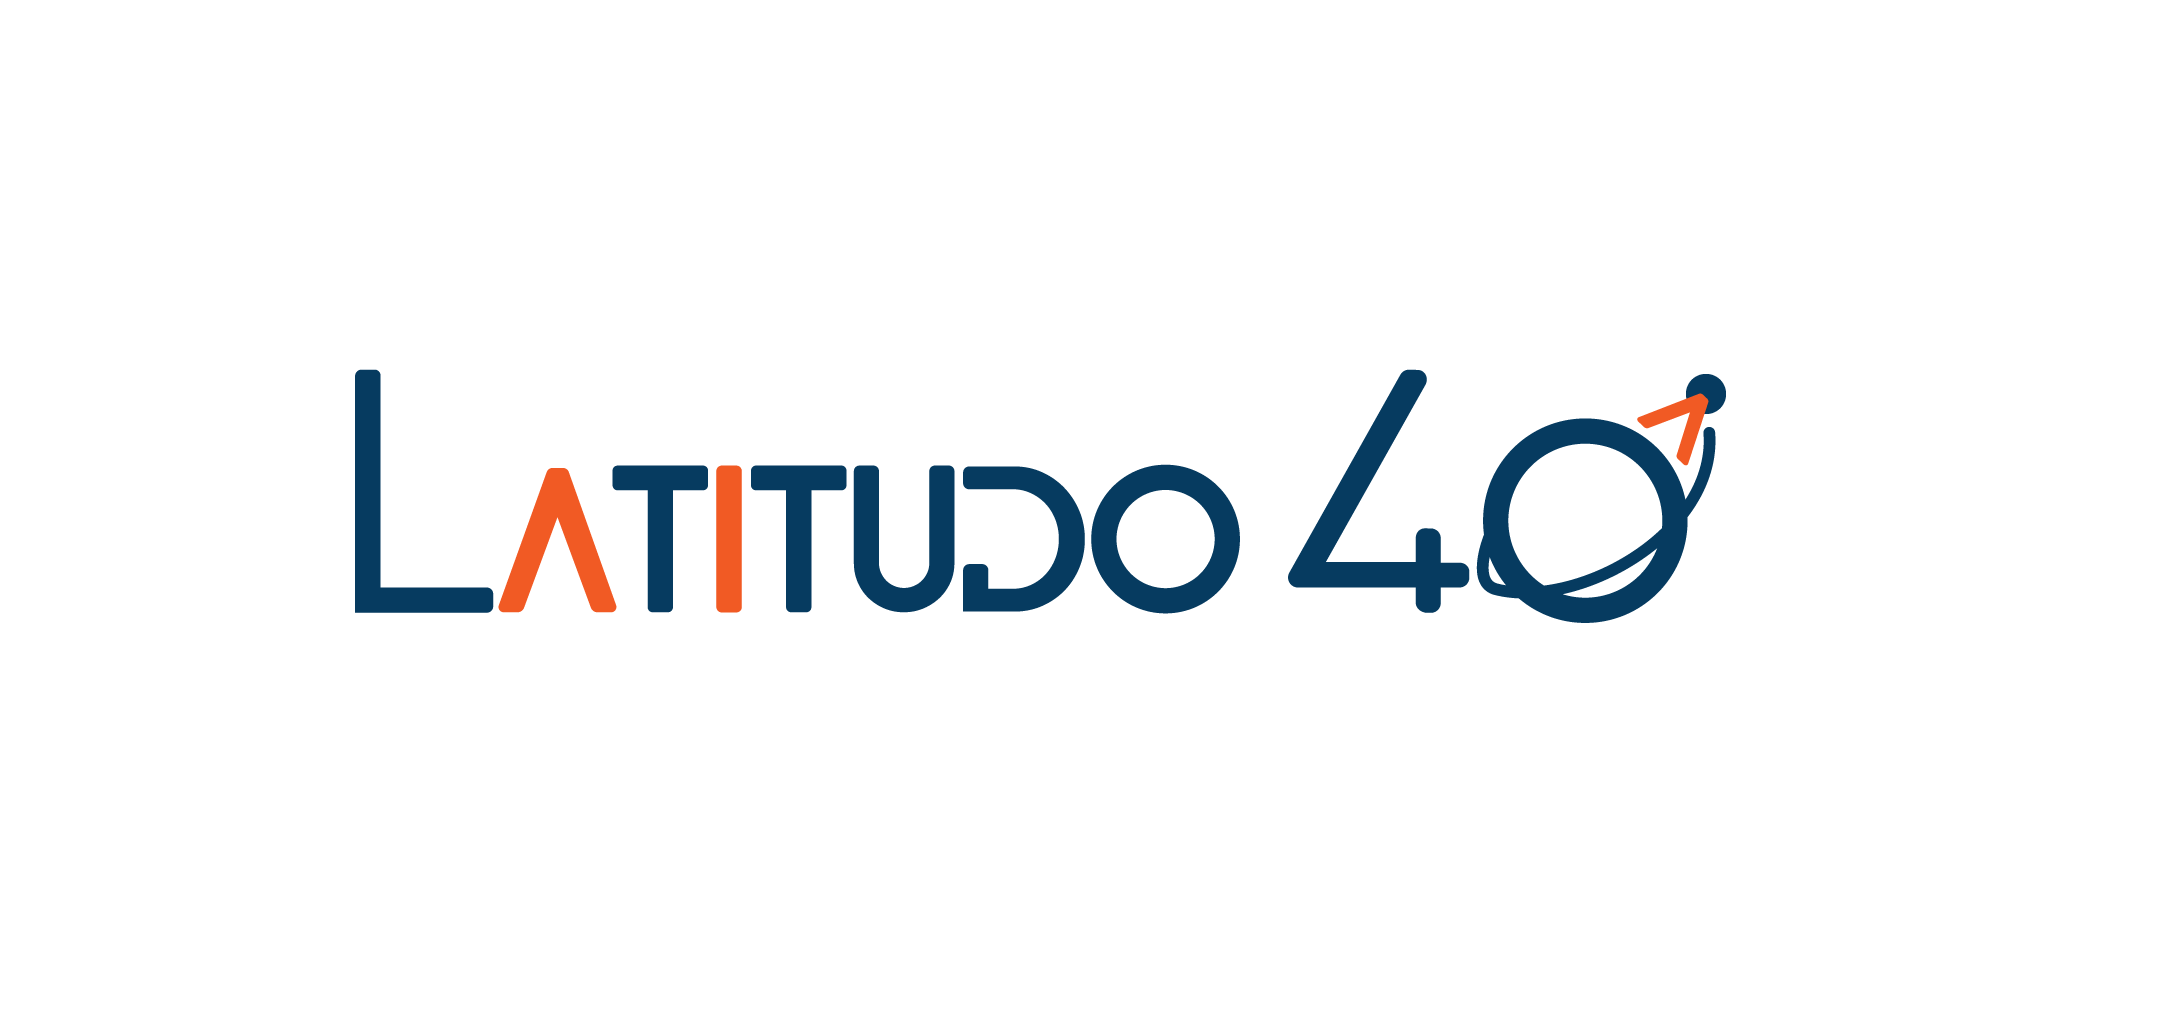 Latitudo40